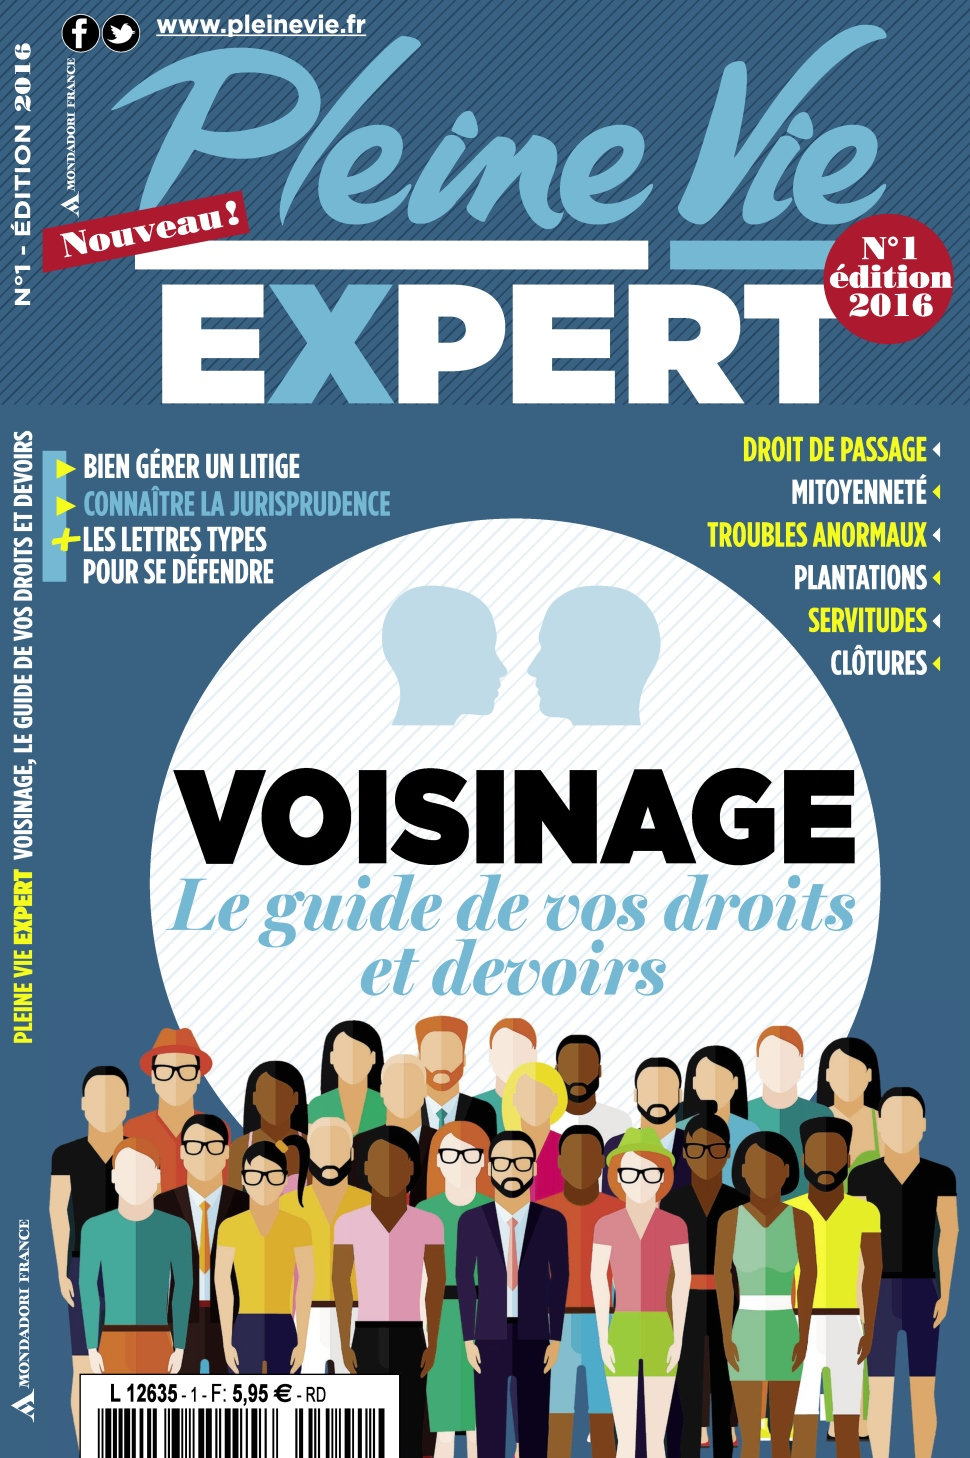 Pleine Vie Expert N°1 - Edition 2016